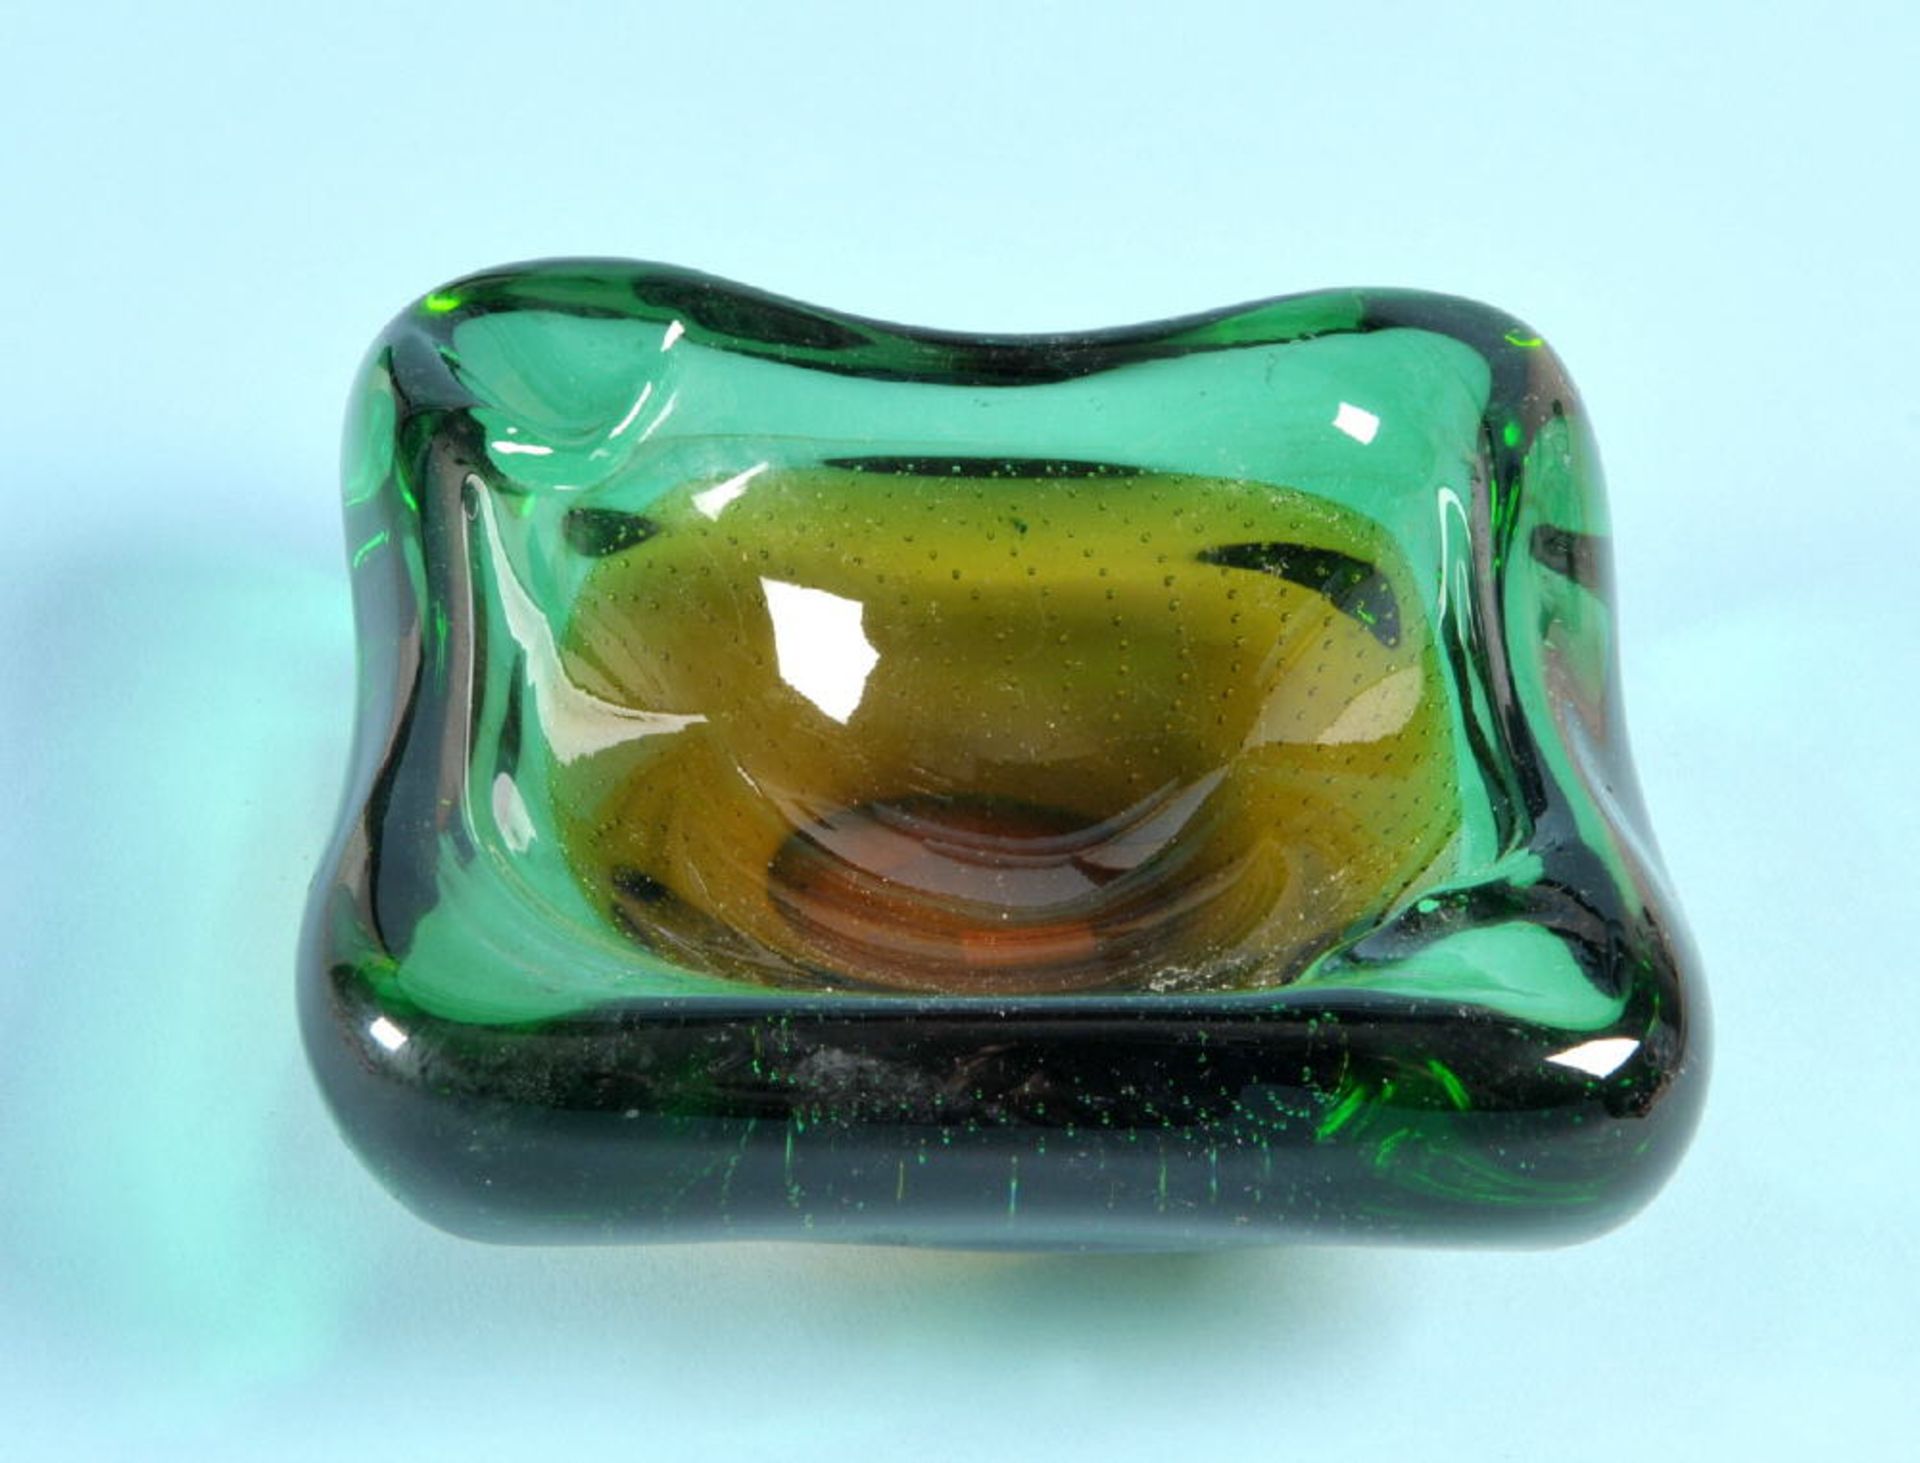 Aschenbecher "Murano"farbloses Glas, grüner/bernsteinfarbener Überfang, eingeschlossenes